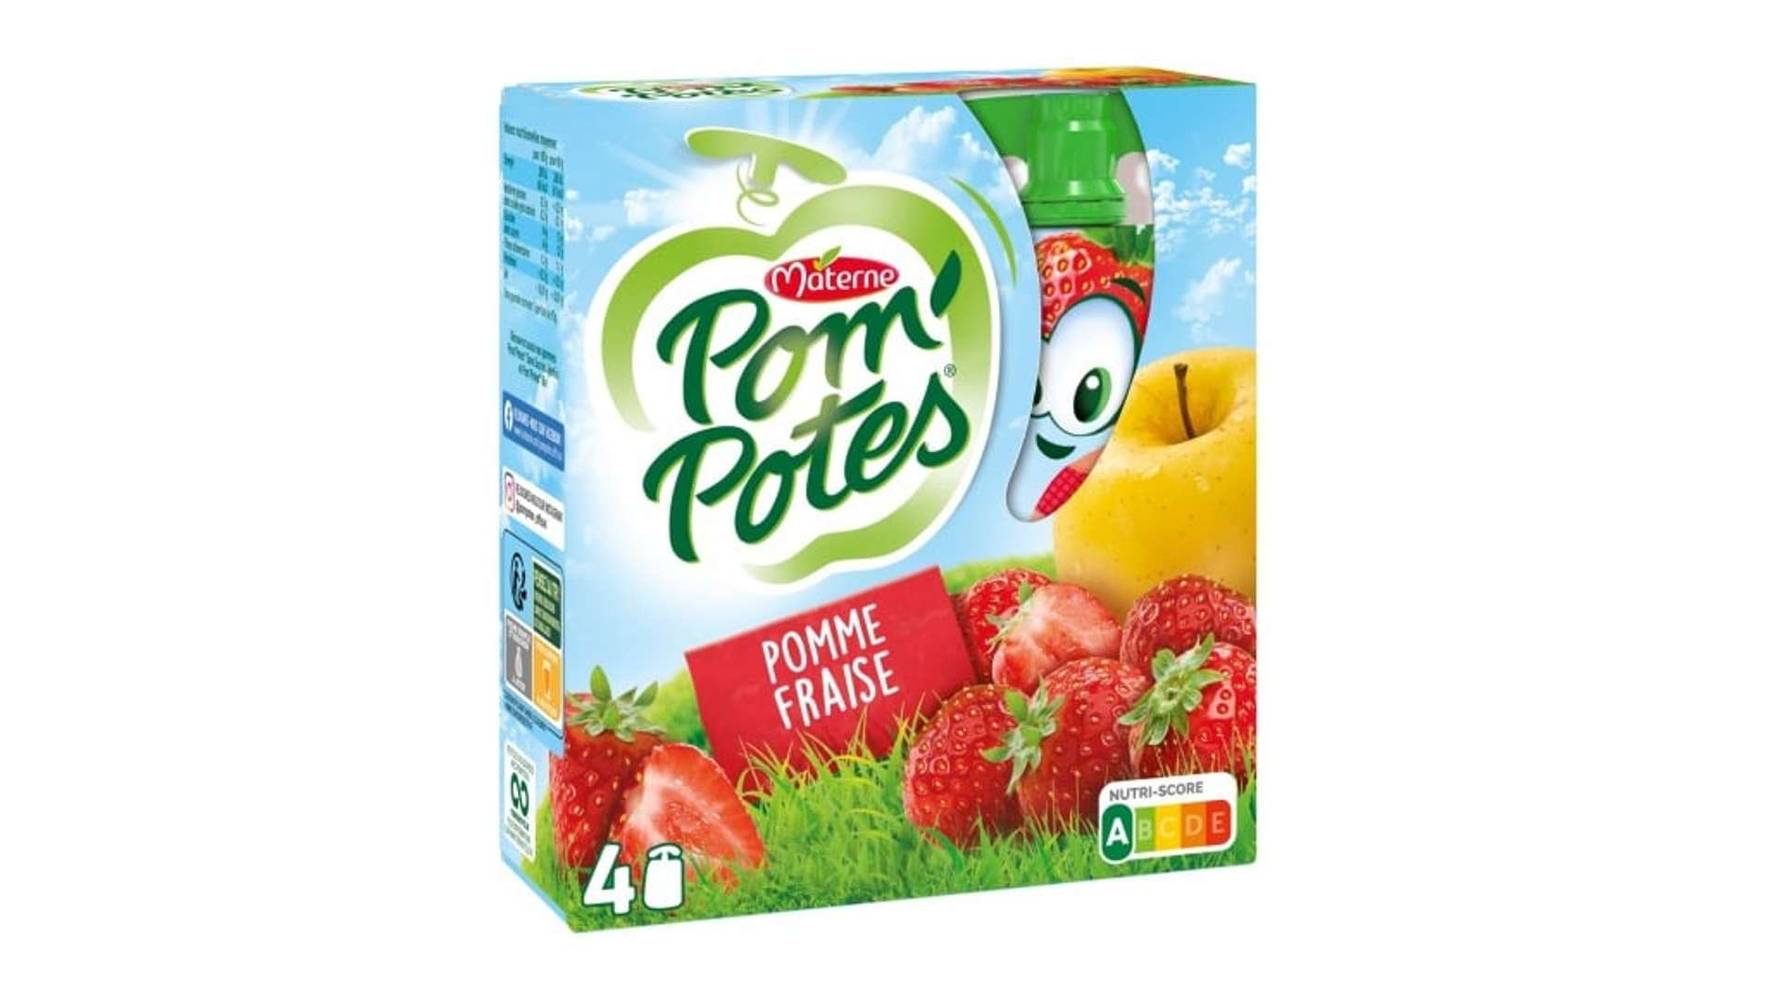 Materne - Pom' potes compotes en gourde pomme fraise (4 pièces)